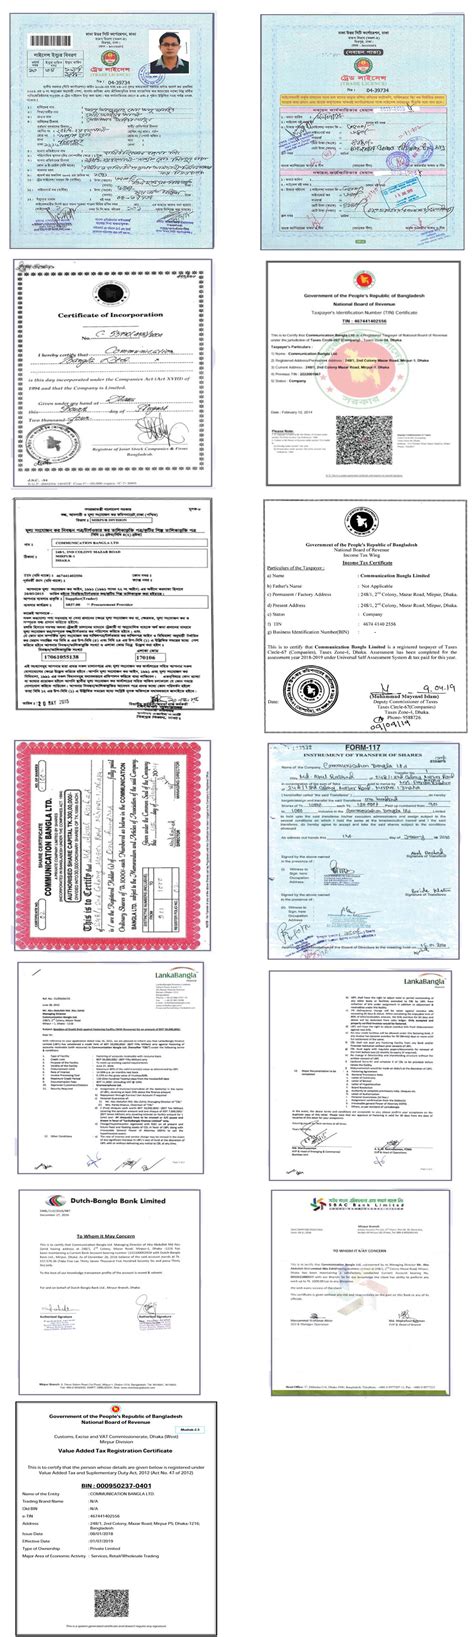 legal documents communication bangla